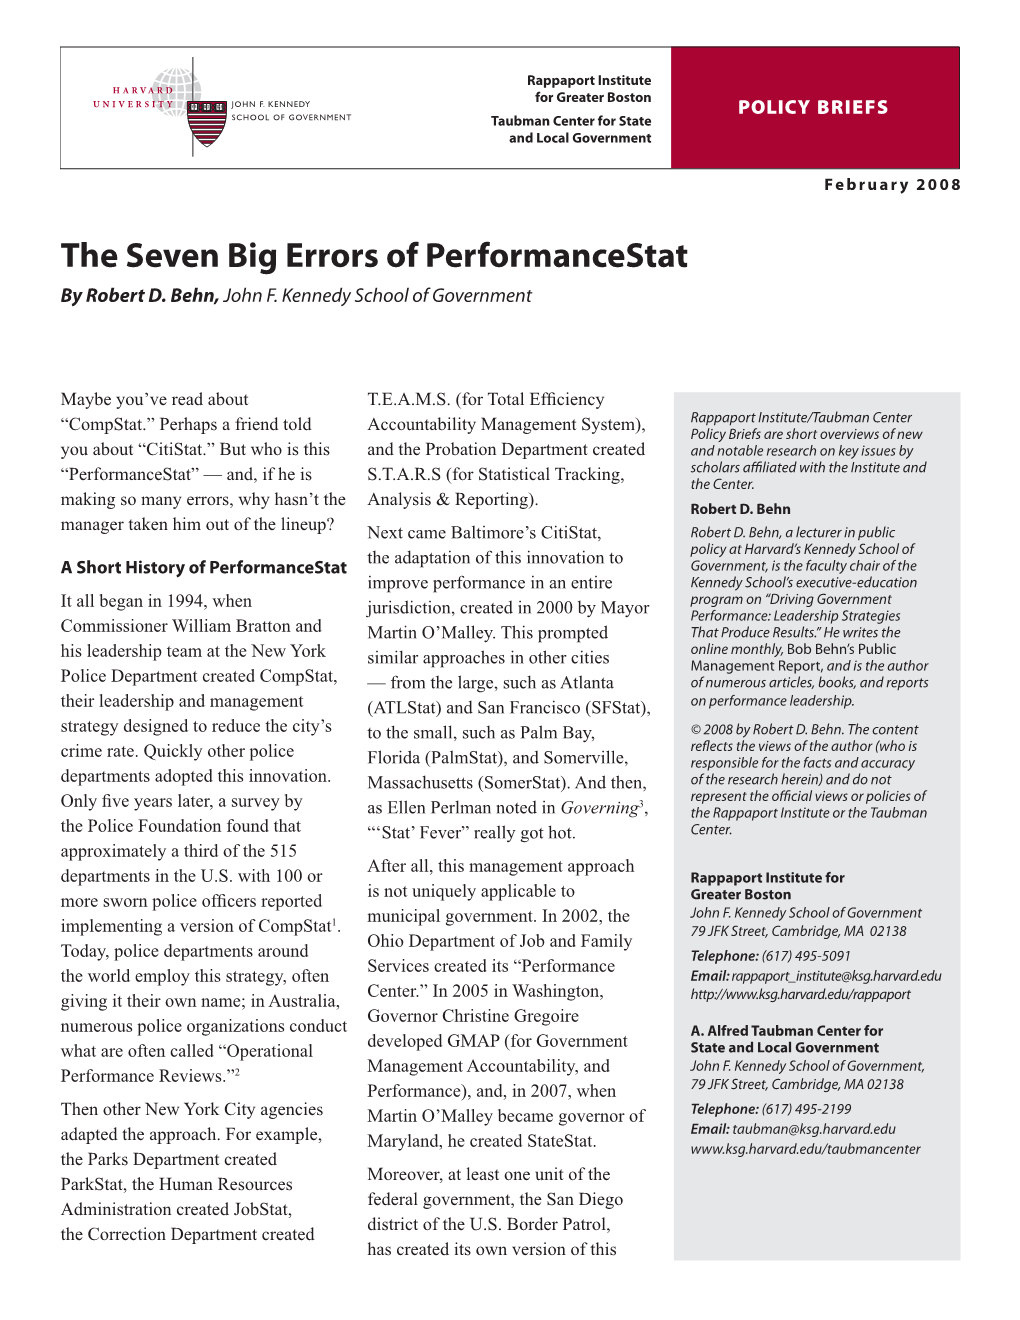 The Seven Big Errors of Performancestat by Bob Behn